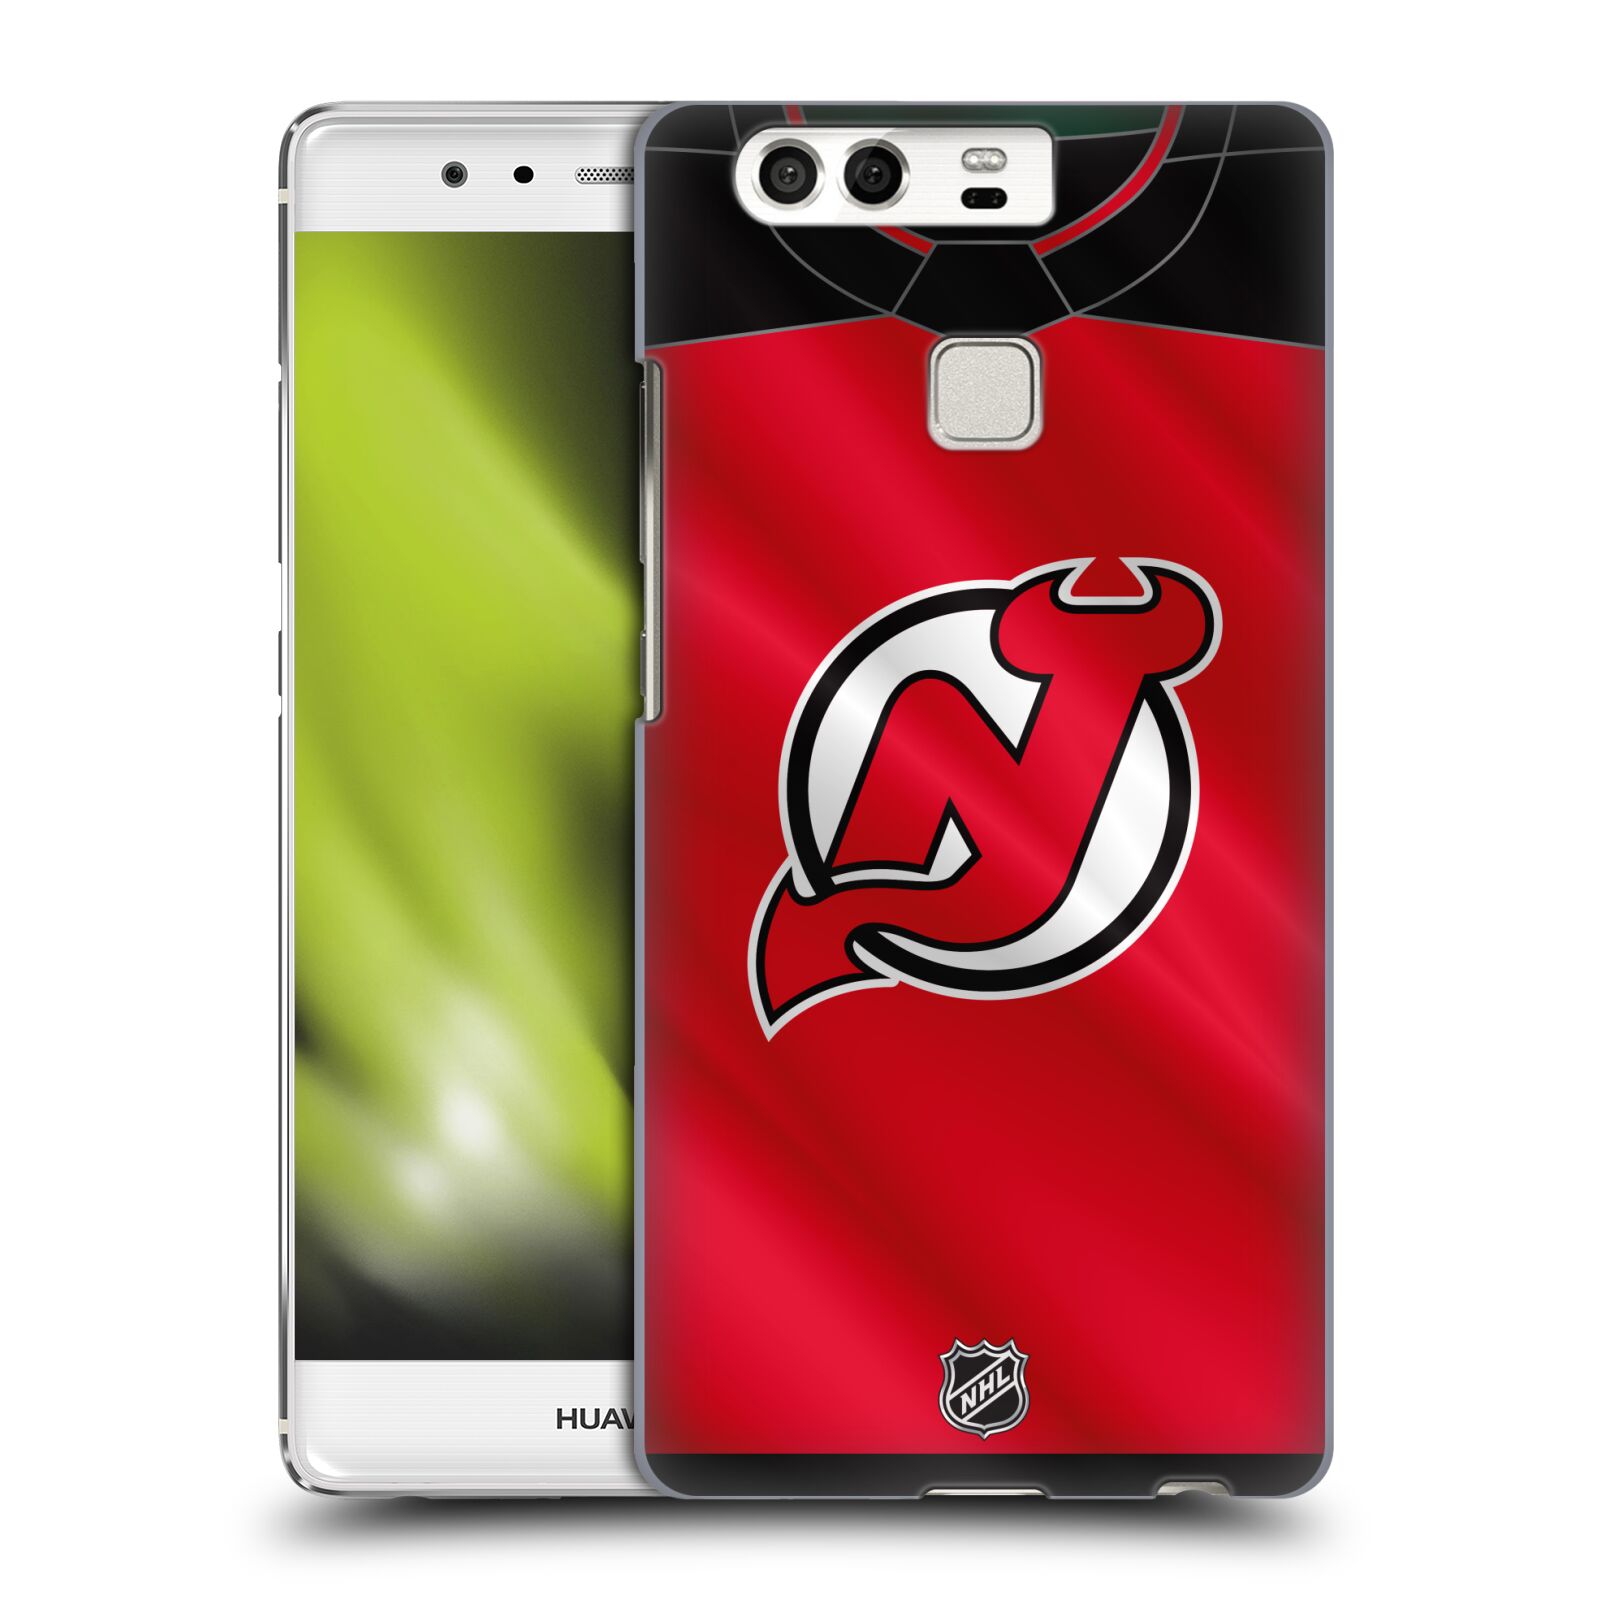 Pouzdro na mobil Huawei P9 / P9 DUAL SIM - HEAD CASE - Hokej NHL - New Jersey Devils - Dres